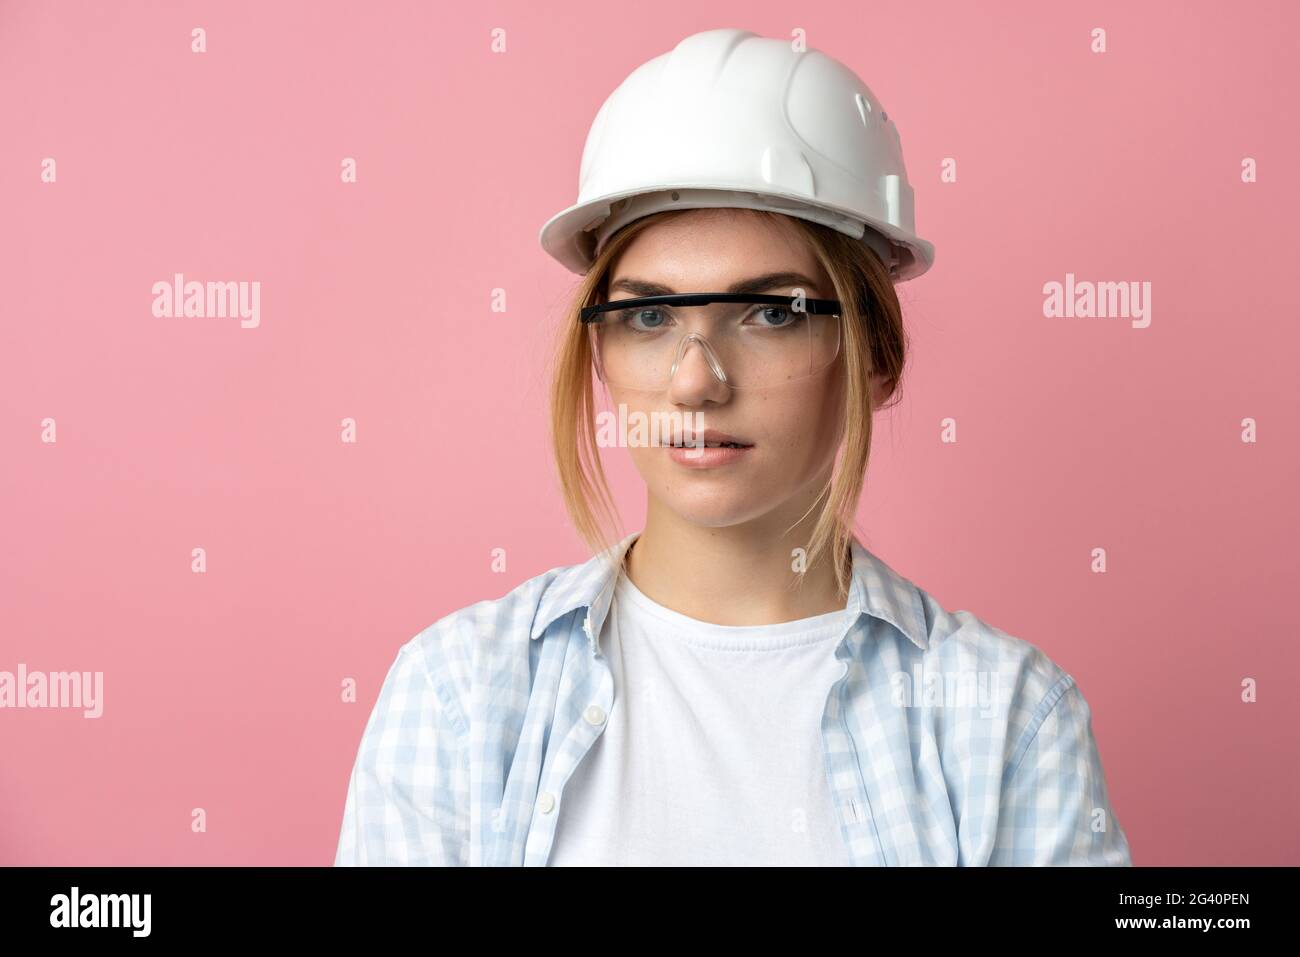 Junges Mädchen in einem Bauhelm auf einem Hintergrund einer rosa Wand.  Schönes Mädchen in Baubrille und Helm isoliert auf einer rosa Wand  Stockfotografie - Alamy